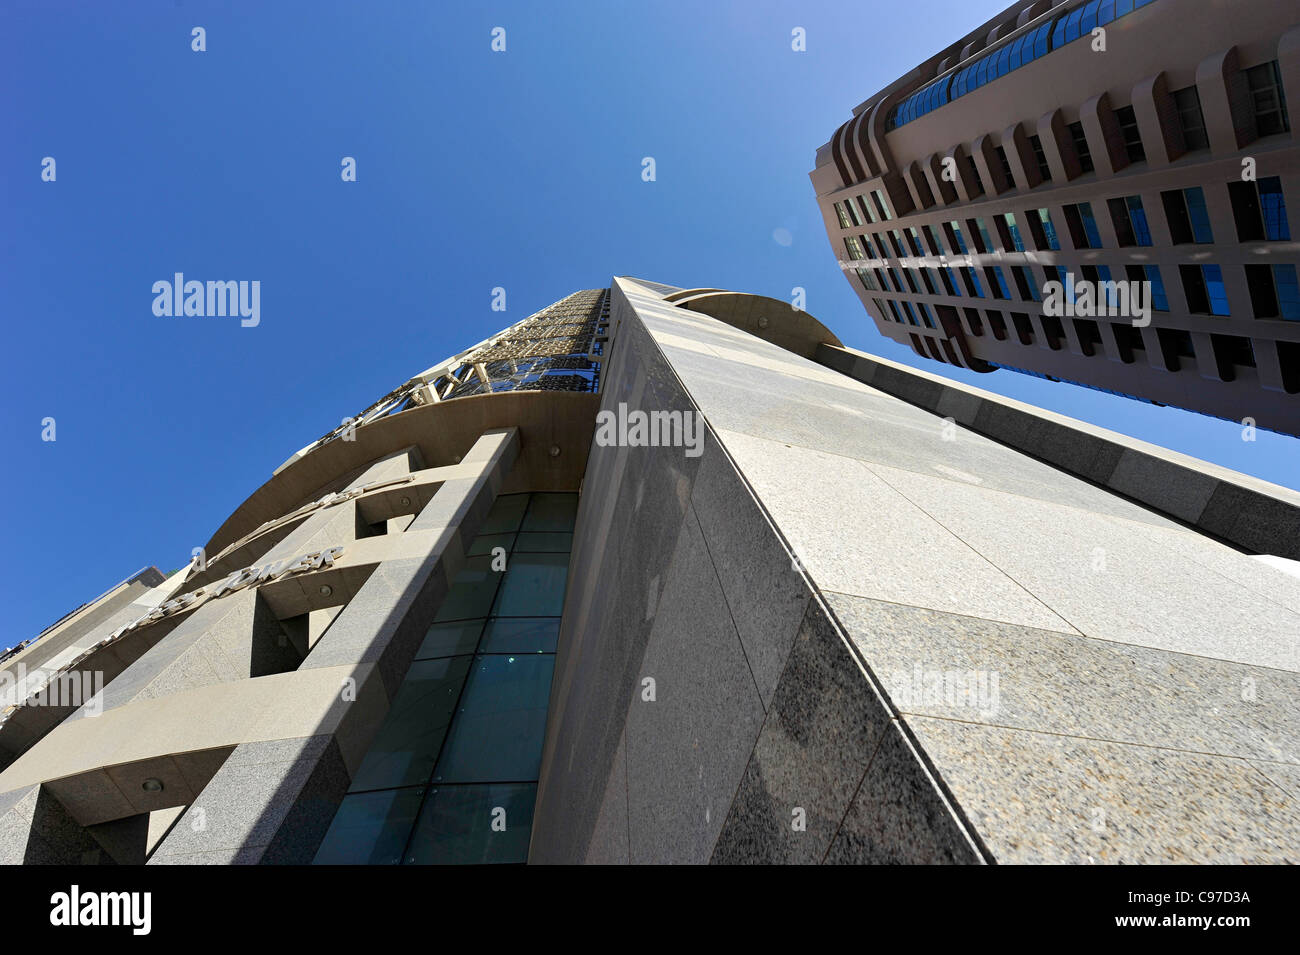 Al Attar Business Tower, gratte-ciel, l'architecture moderne, du quartier financier, Dubaï, Émirats arabes unis, Moyen Orient Banque D'Images